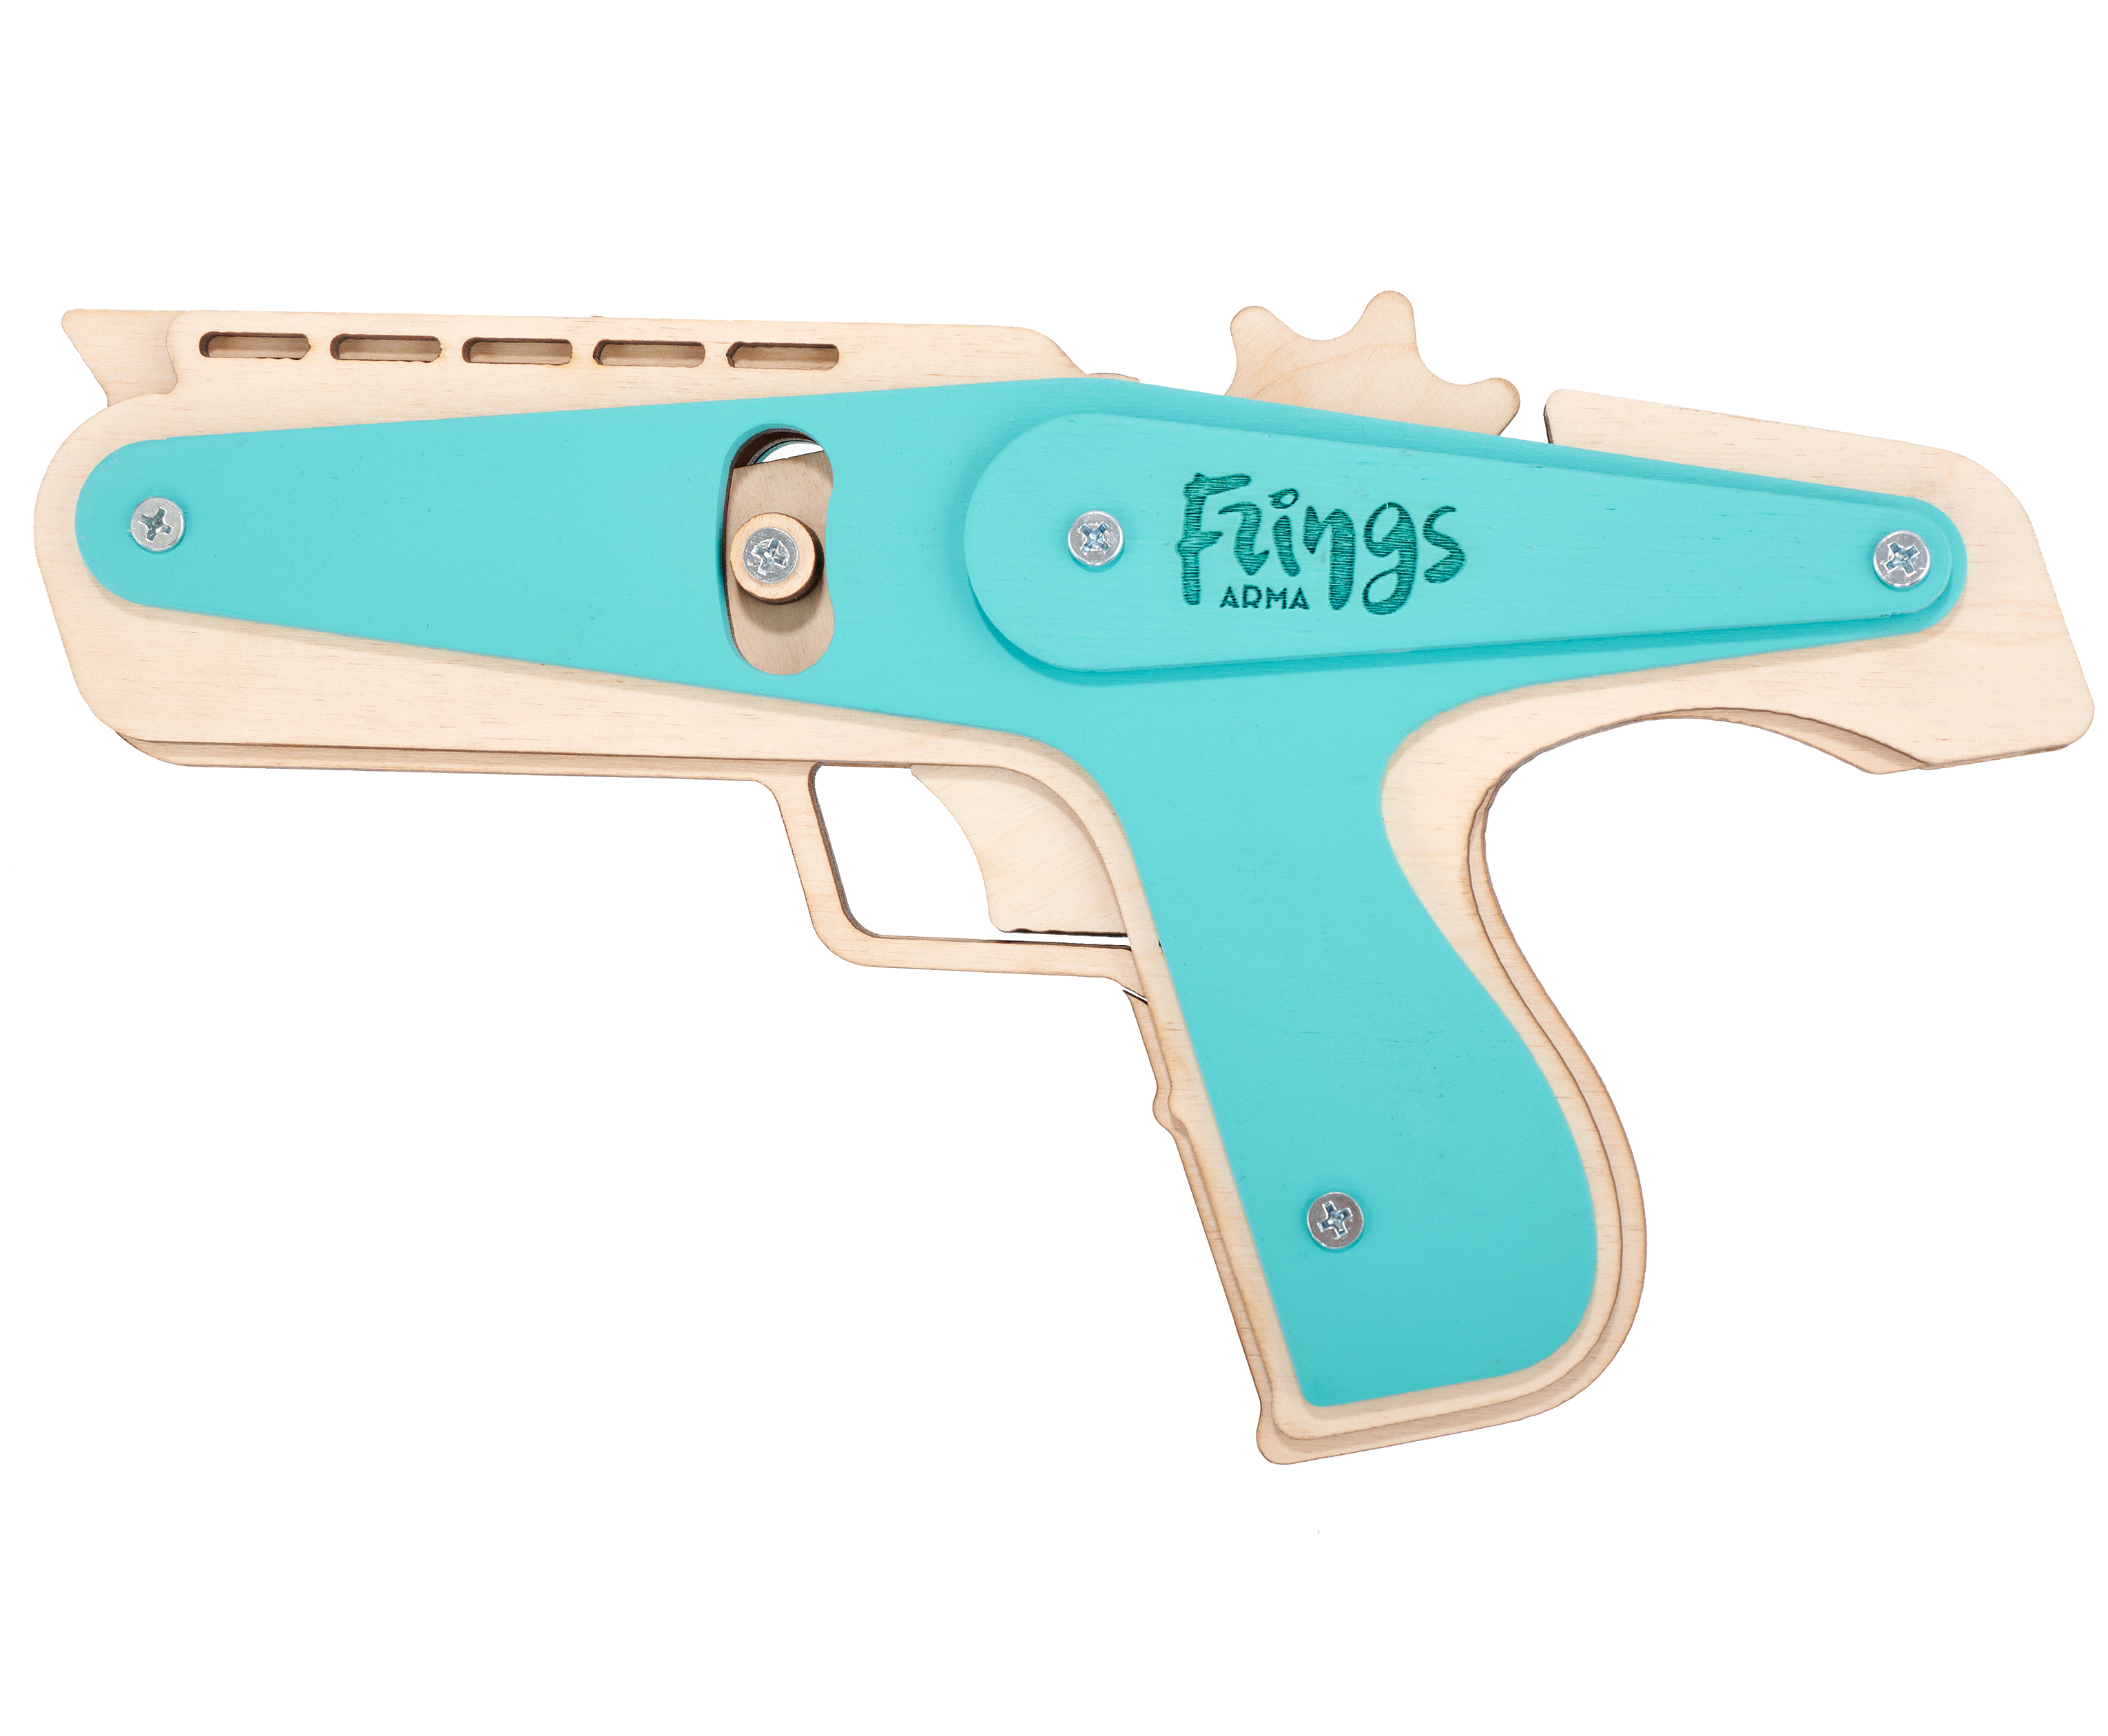 Резинкострел игрушечный Arma toys пистолет-пулемет Frings макет, АТ003 резинкострел arma toys револьвер frings макет ат002